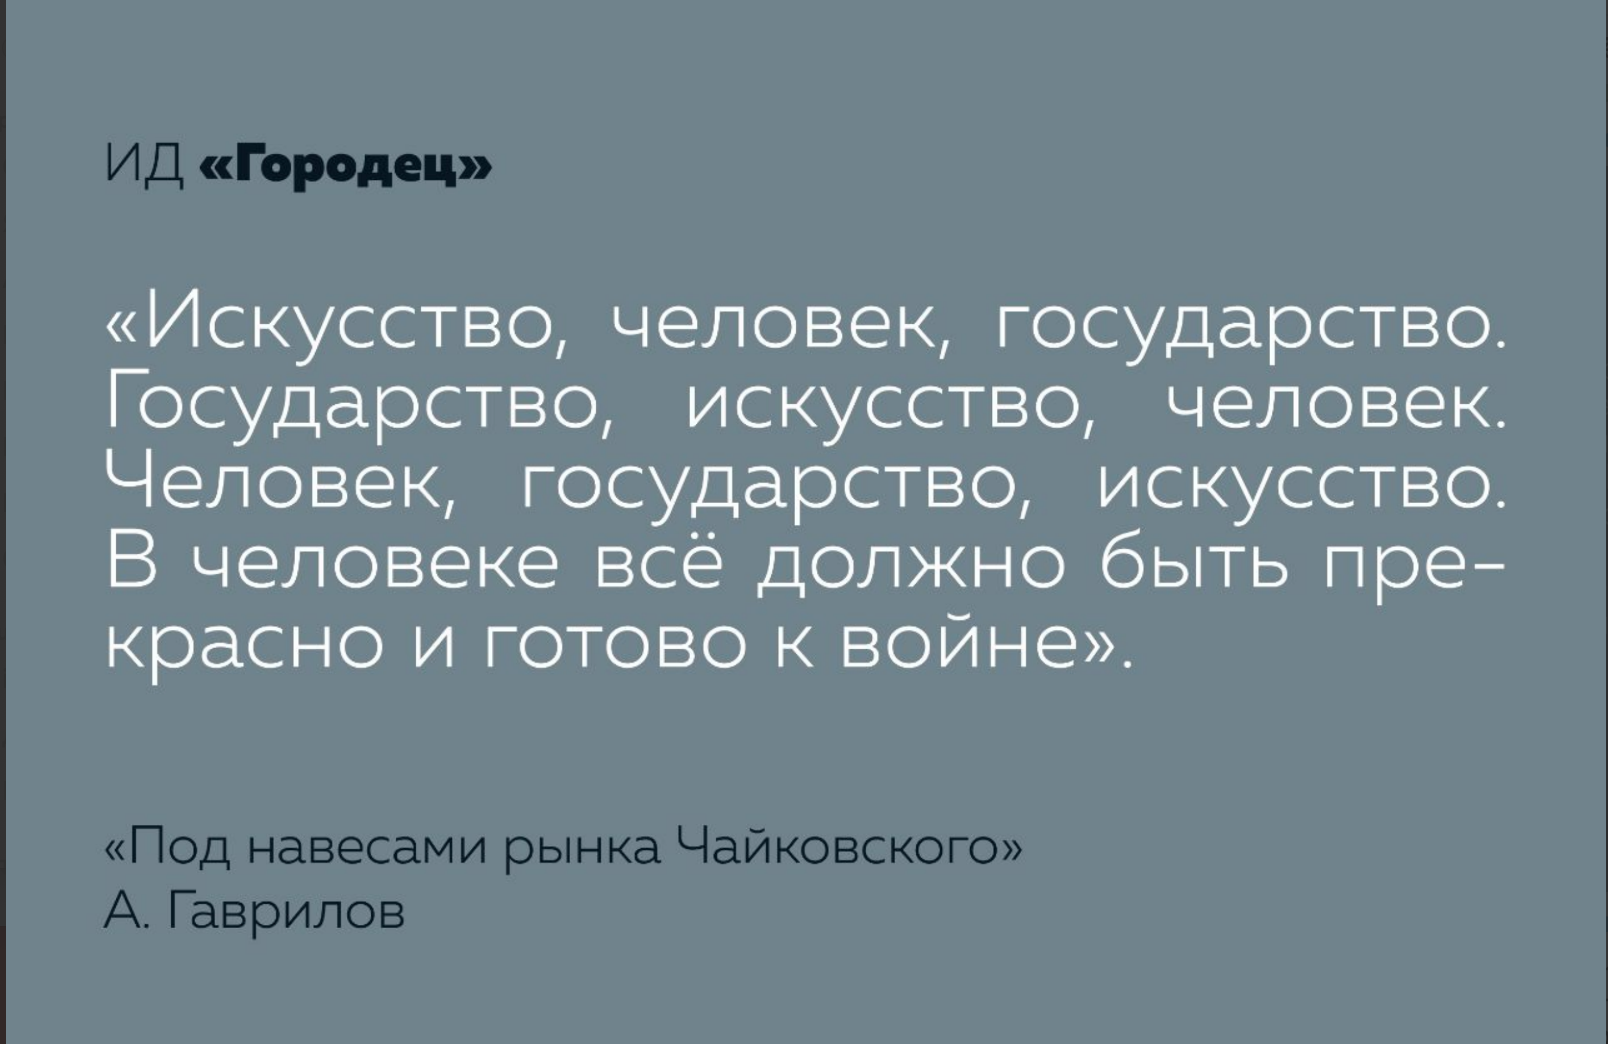 «Под навесами рынка Чайковского». Презентация книги Анатолия Гаврилова